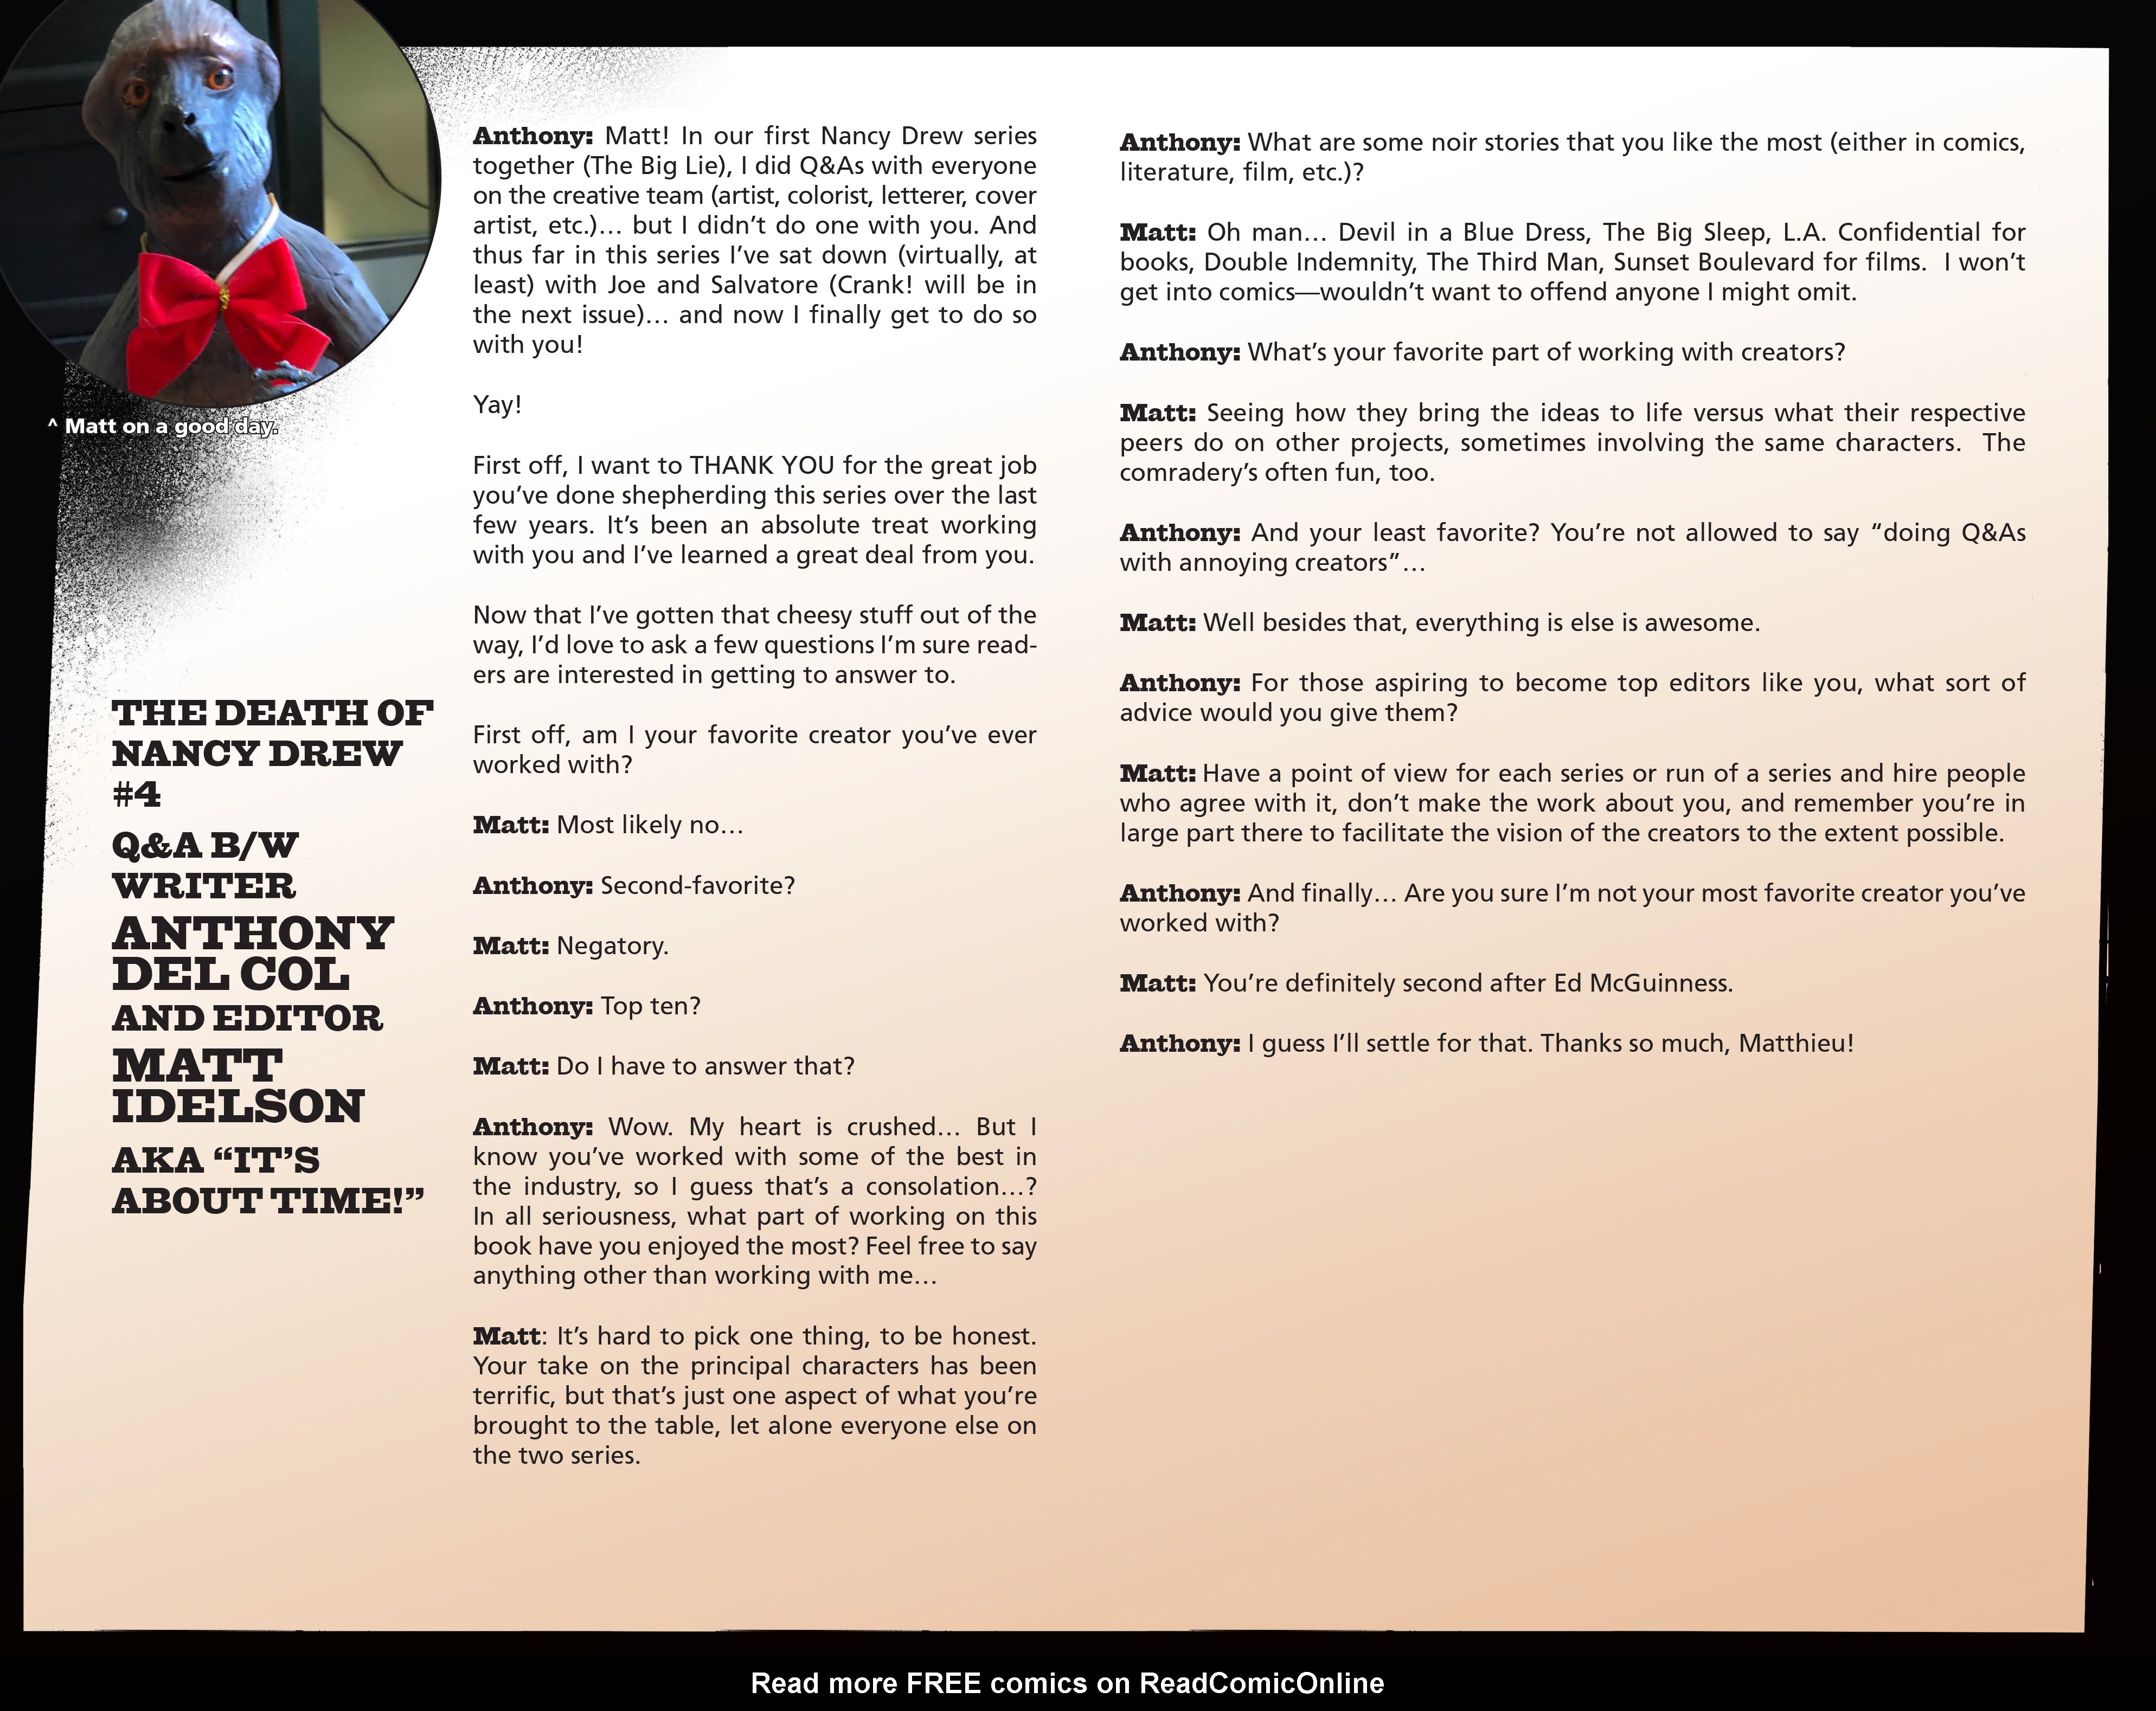 Read online Nancy Drew & The Hardy Boys: The Death of Nancy Drew comic -  Issue #4 - 26